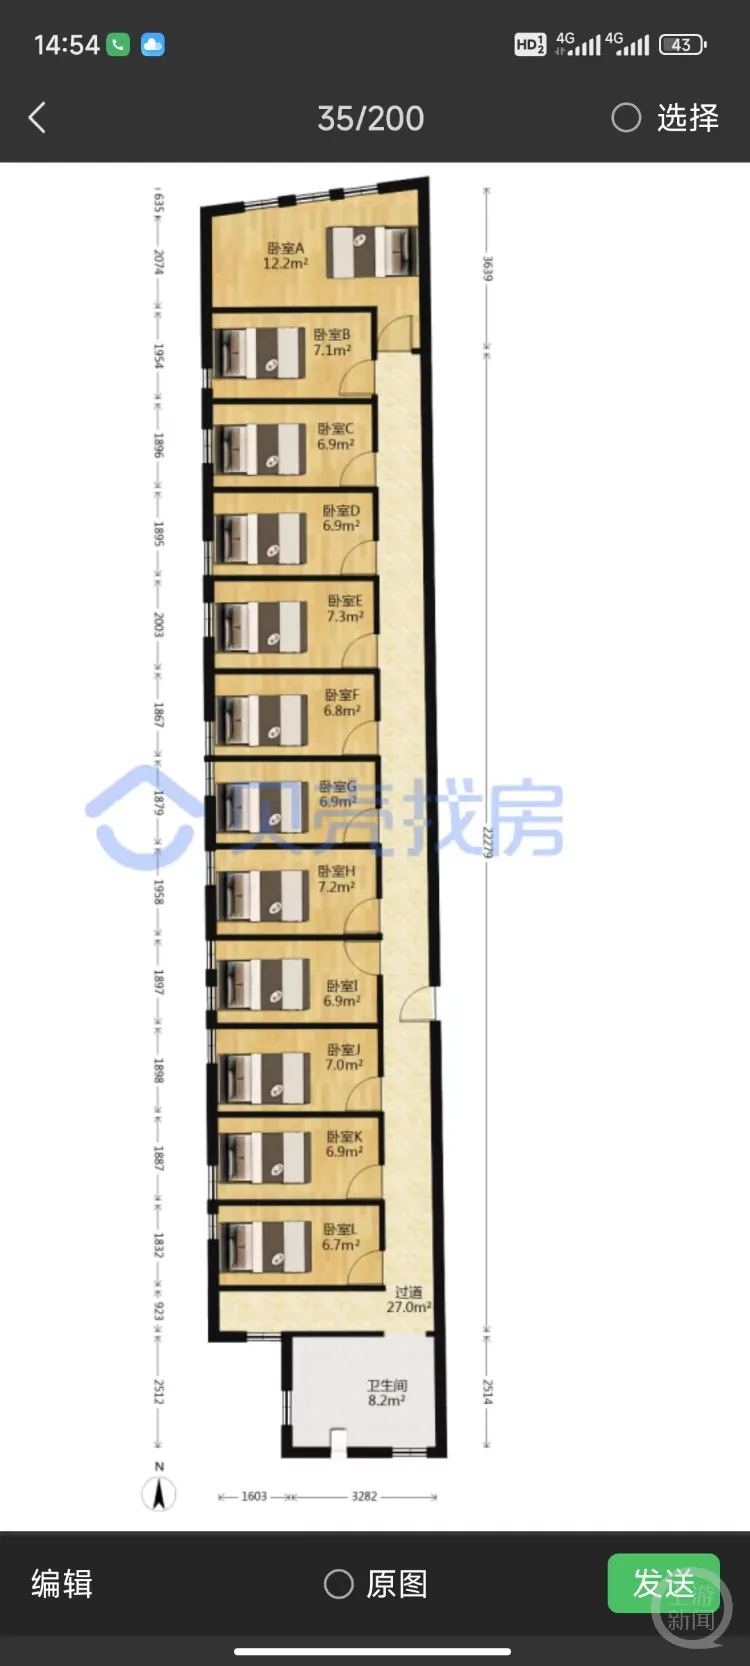 廣州一套150平「砍刀房」隔出12間12床售價350萬